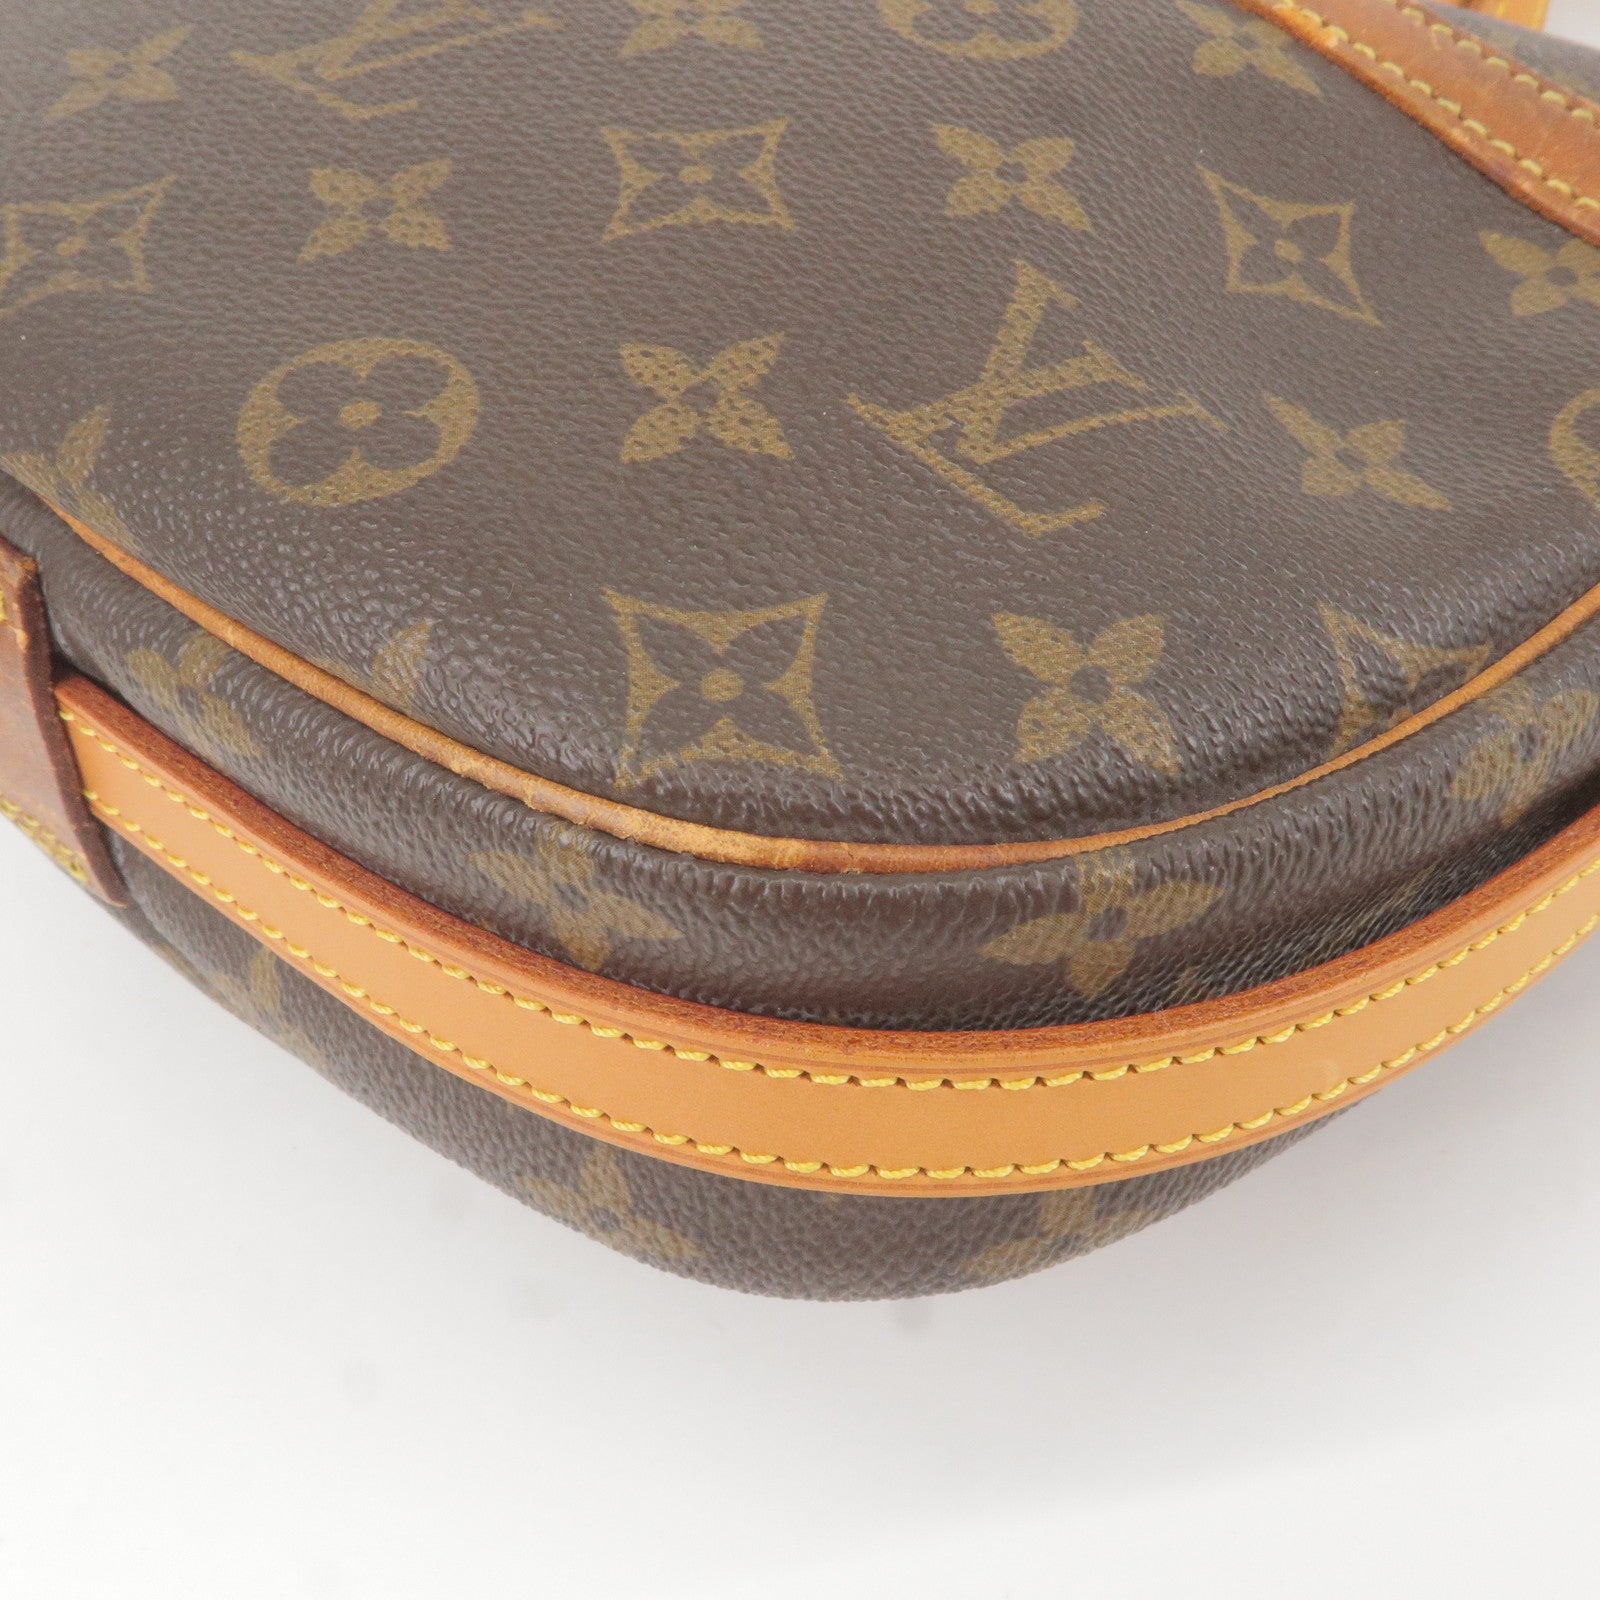 Louis Vuitton Vintage Authentic Monogram Shoulder Bag Nile mm 2012